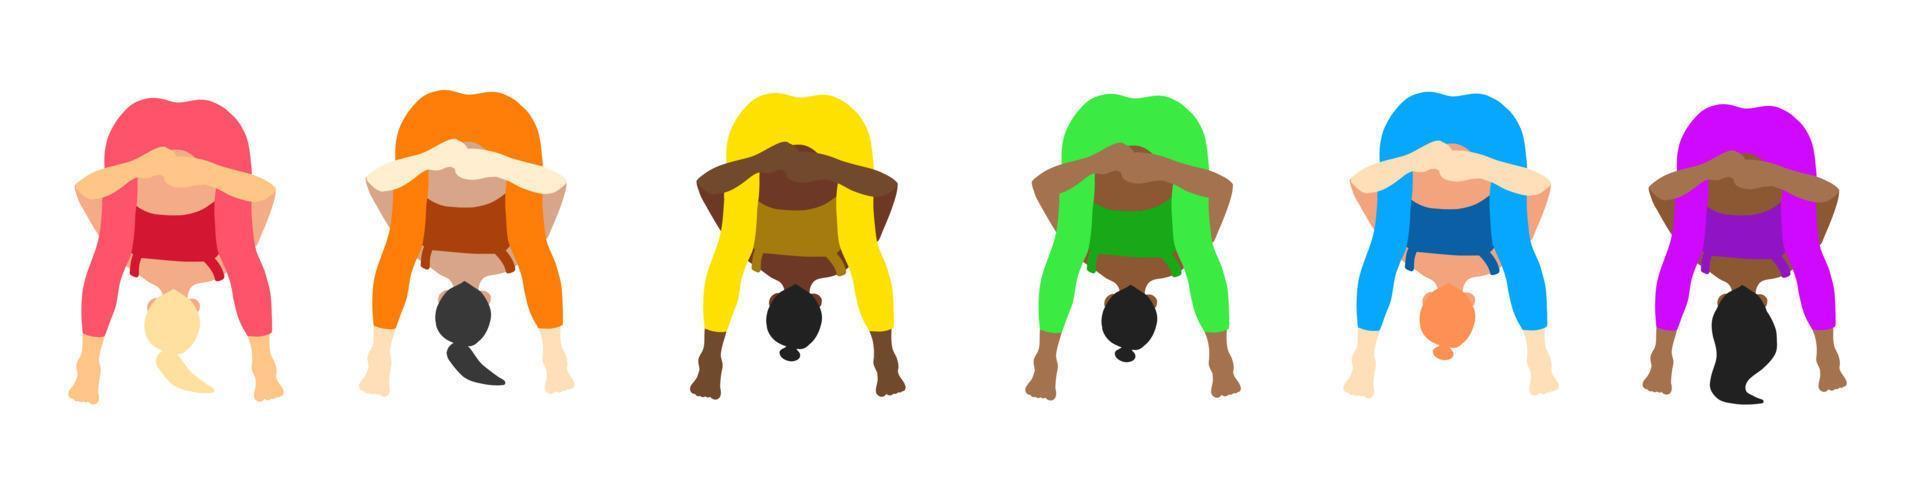 coleção de poses de ioga. europeu, africano, asiático. menina mulher feminina. ilustração vetorial em estilo cartoon plana isolado no fundo branco. vetor